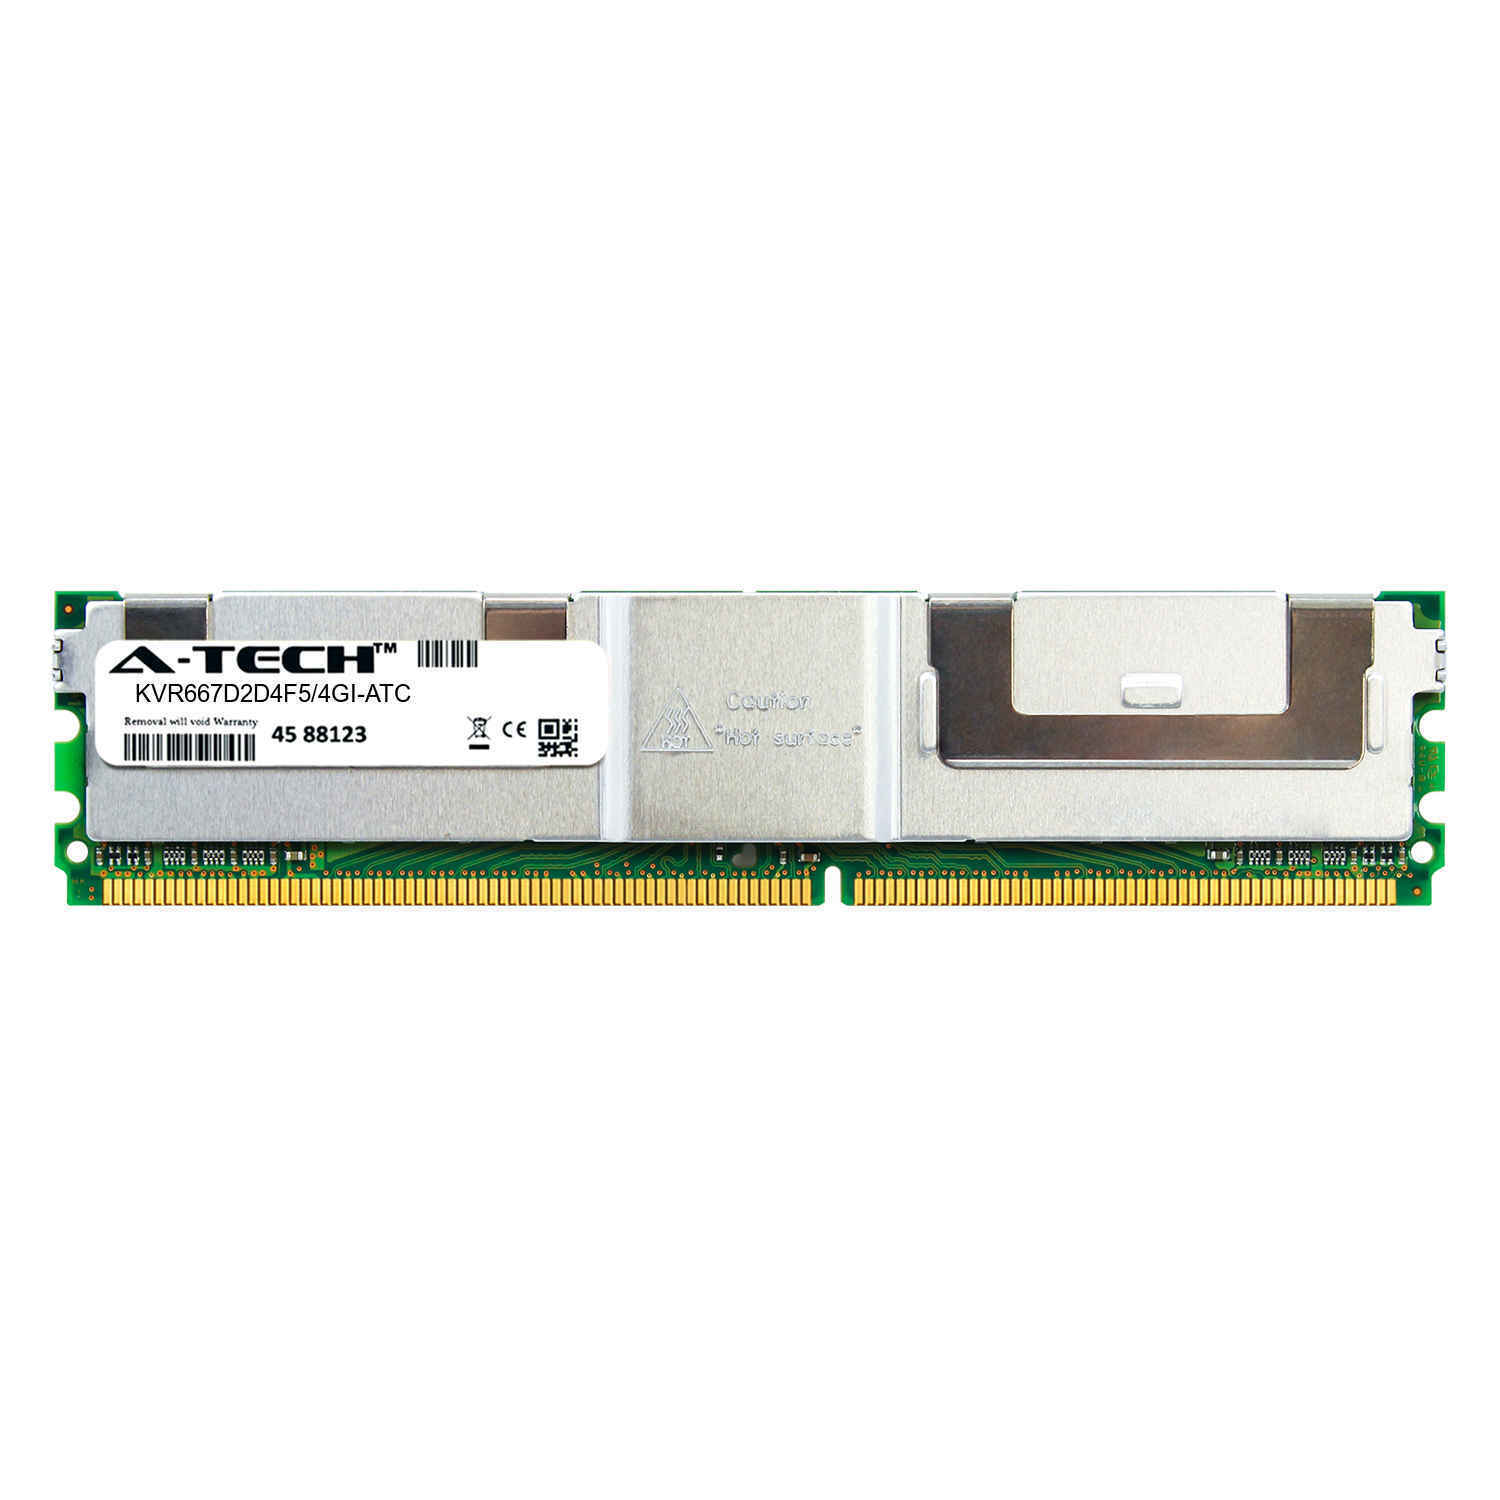 4GB PC2-5300 ECC FBDIMM (Kingston KVR667D2D4F5/4GI Equivalent) Server Memory RAM